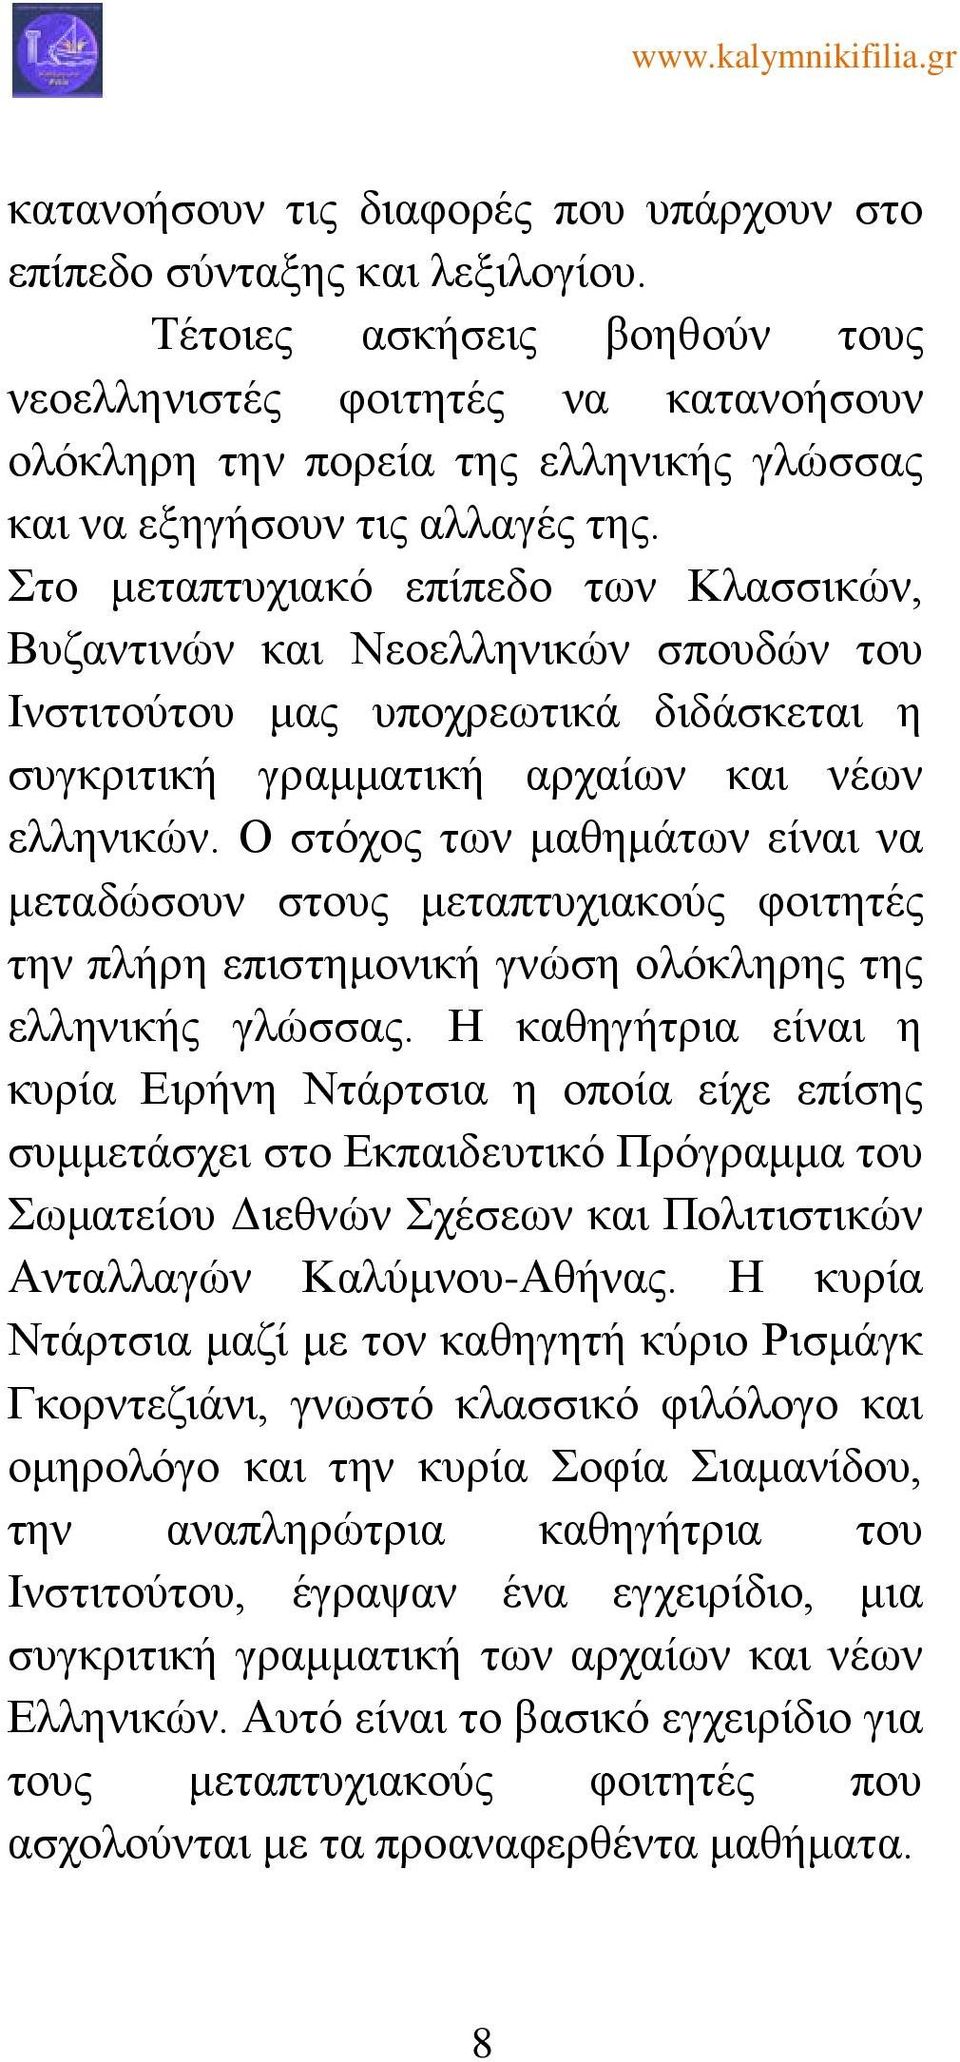 Στο μεταπτυχιακό επίπεδο των Κλασσικών, Βυζαντινών και Νεοελληνικών σπουδών του Ινστιτούτου μας υποχρεωτικά διδάσκεται η συγκριτική γραμματική αρχαίων και νέων ελληνικών.